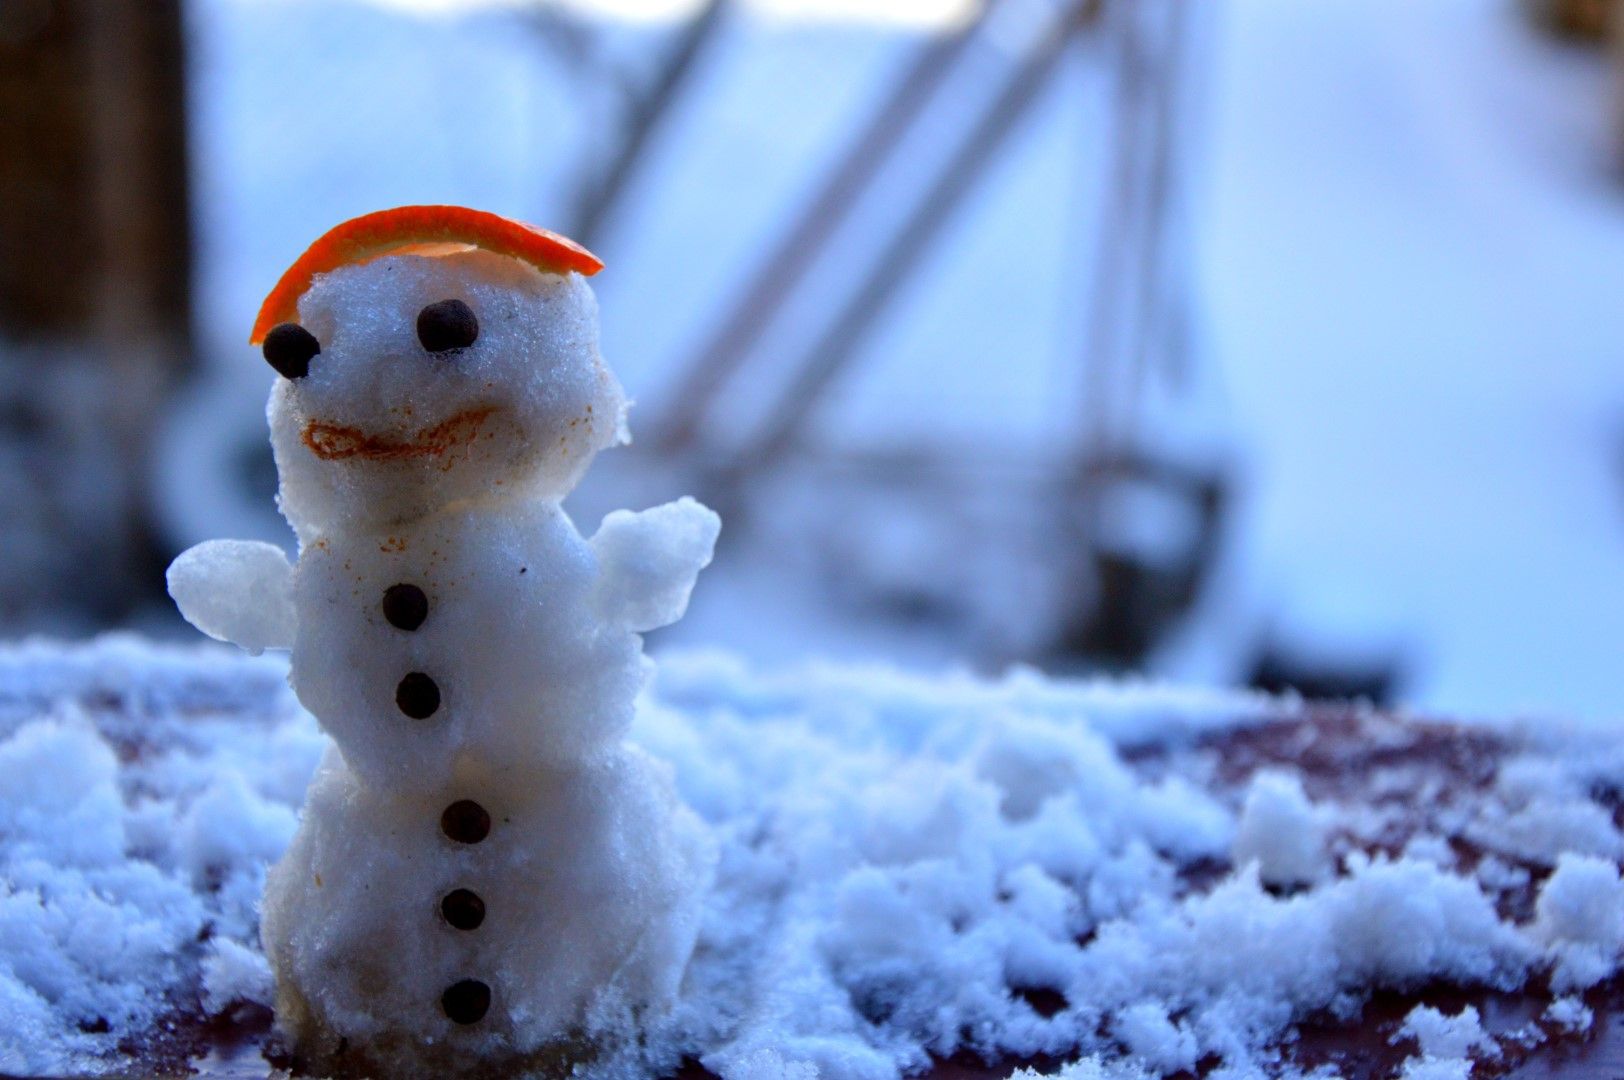 Във вторник в Софийско е възможно да превали сняг, който едва ли ще бъде достатъчен за направа на снежни човеци : )